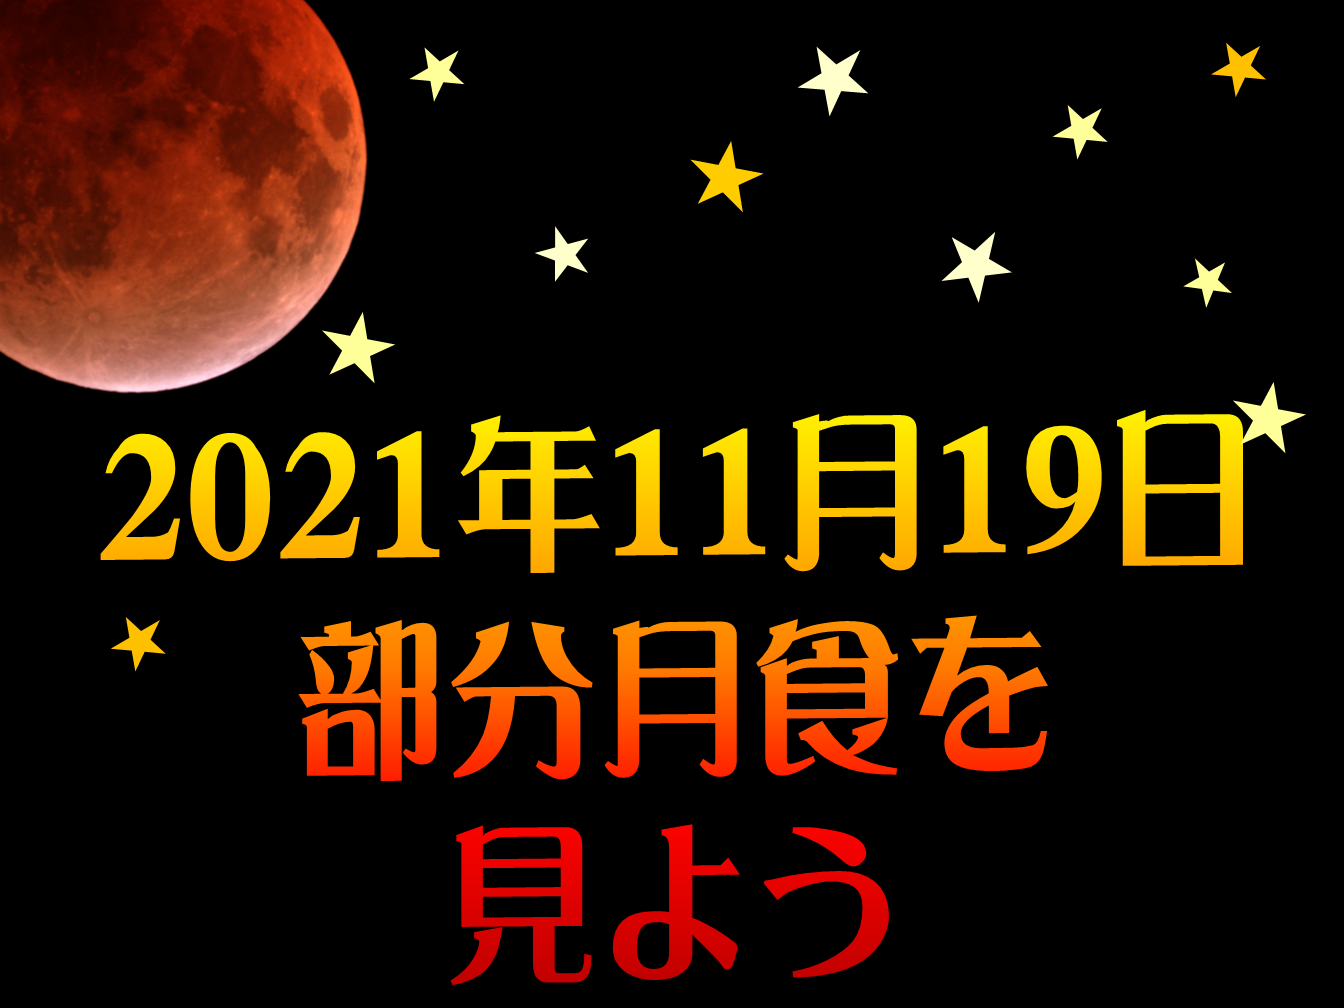 2021年11月19日皆既月食タイトル画像